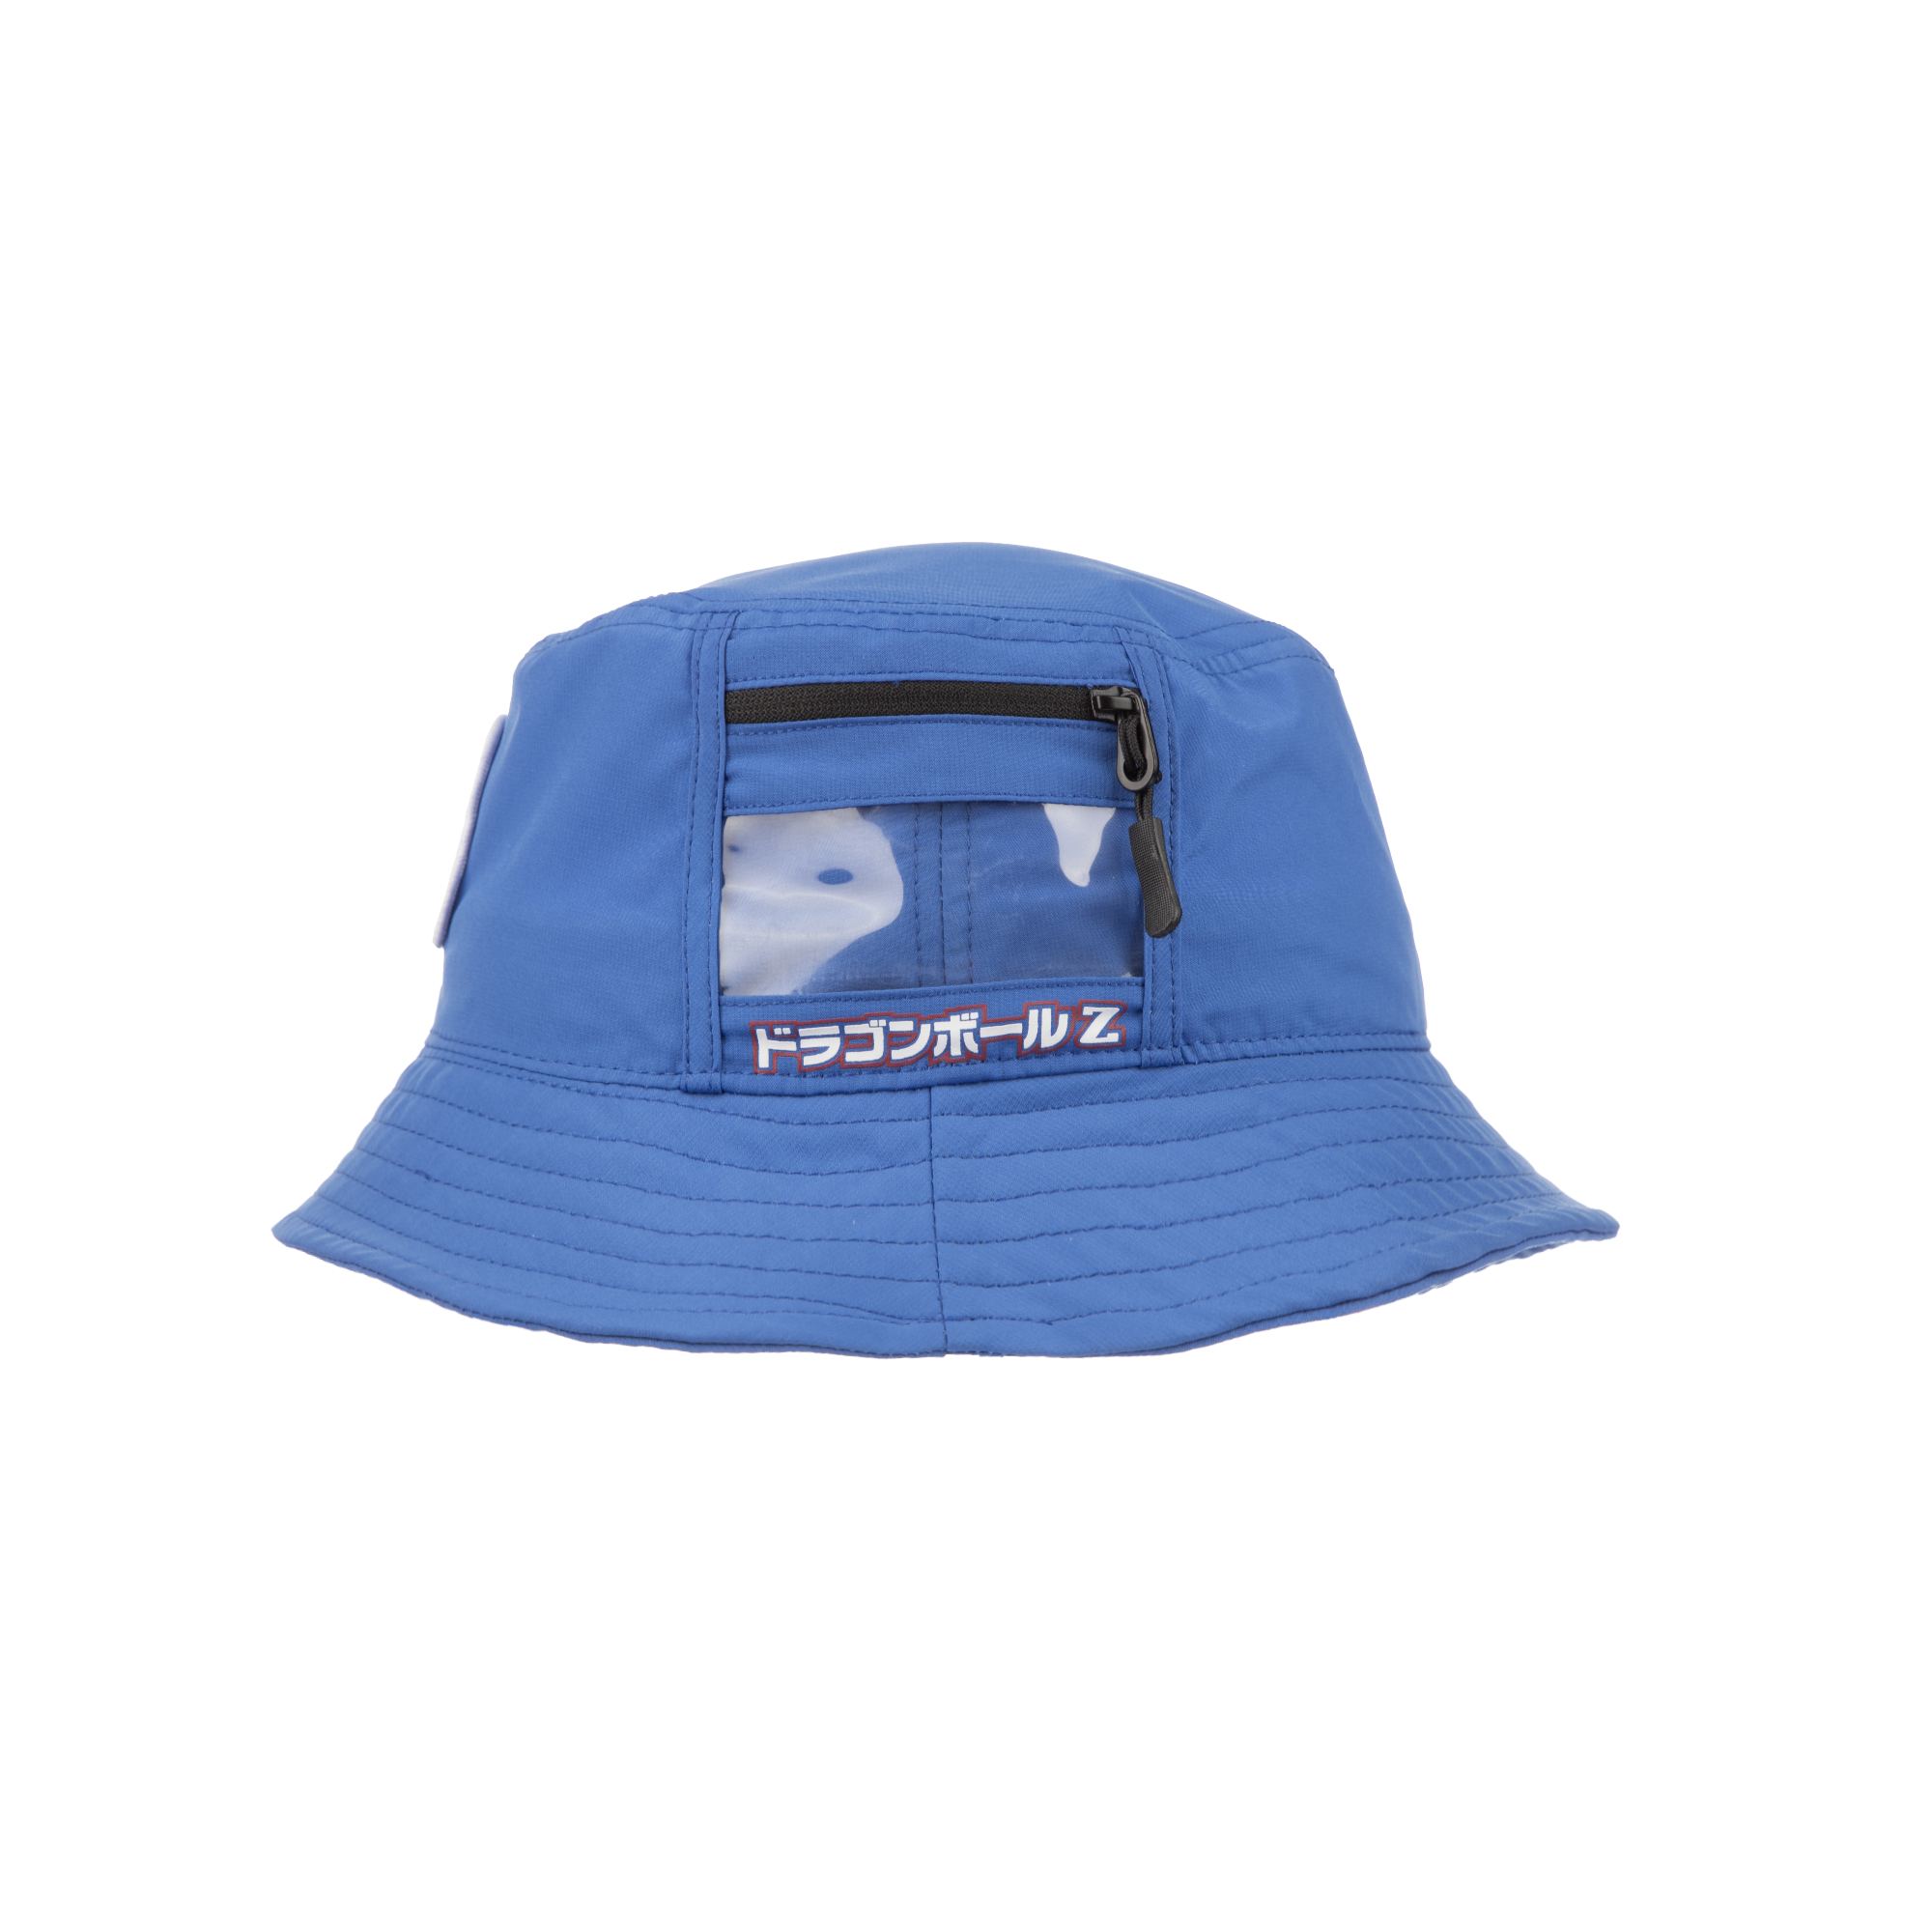 Vegeta Cargo Pocket Bucket Hat